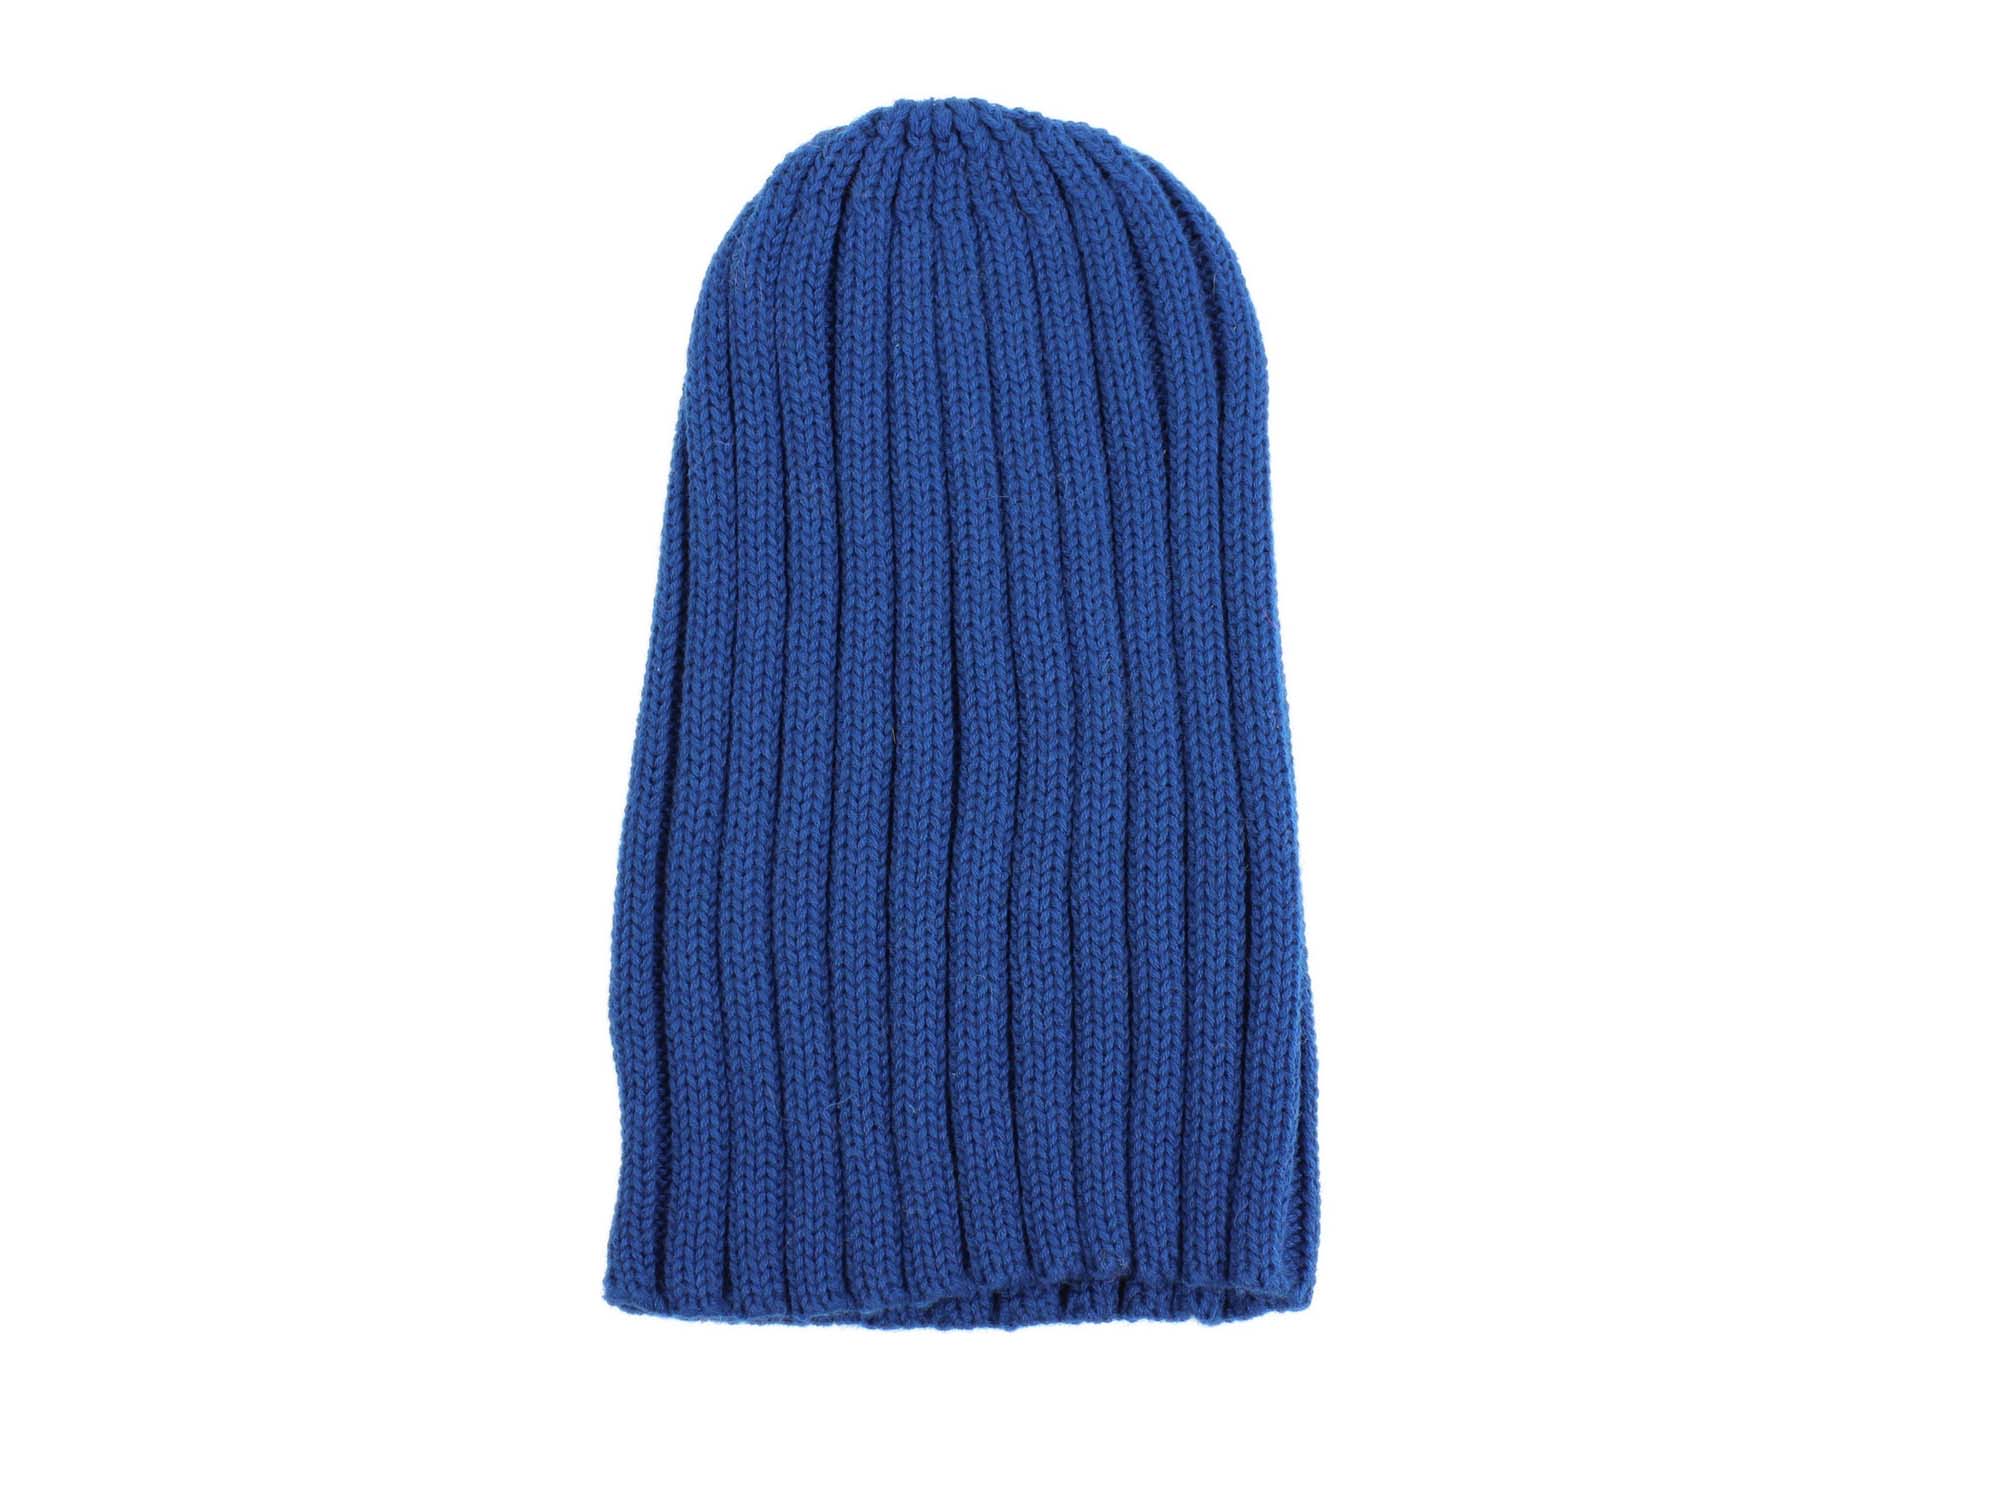 100% Merino Wool Hat: Teal - 1292-JS02TE-AS (L24)